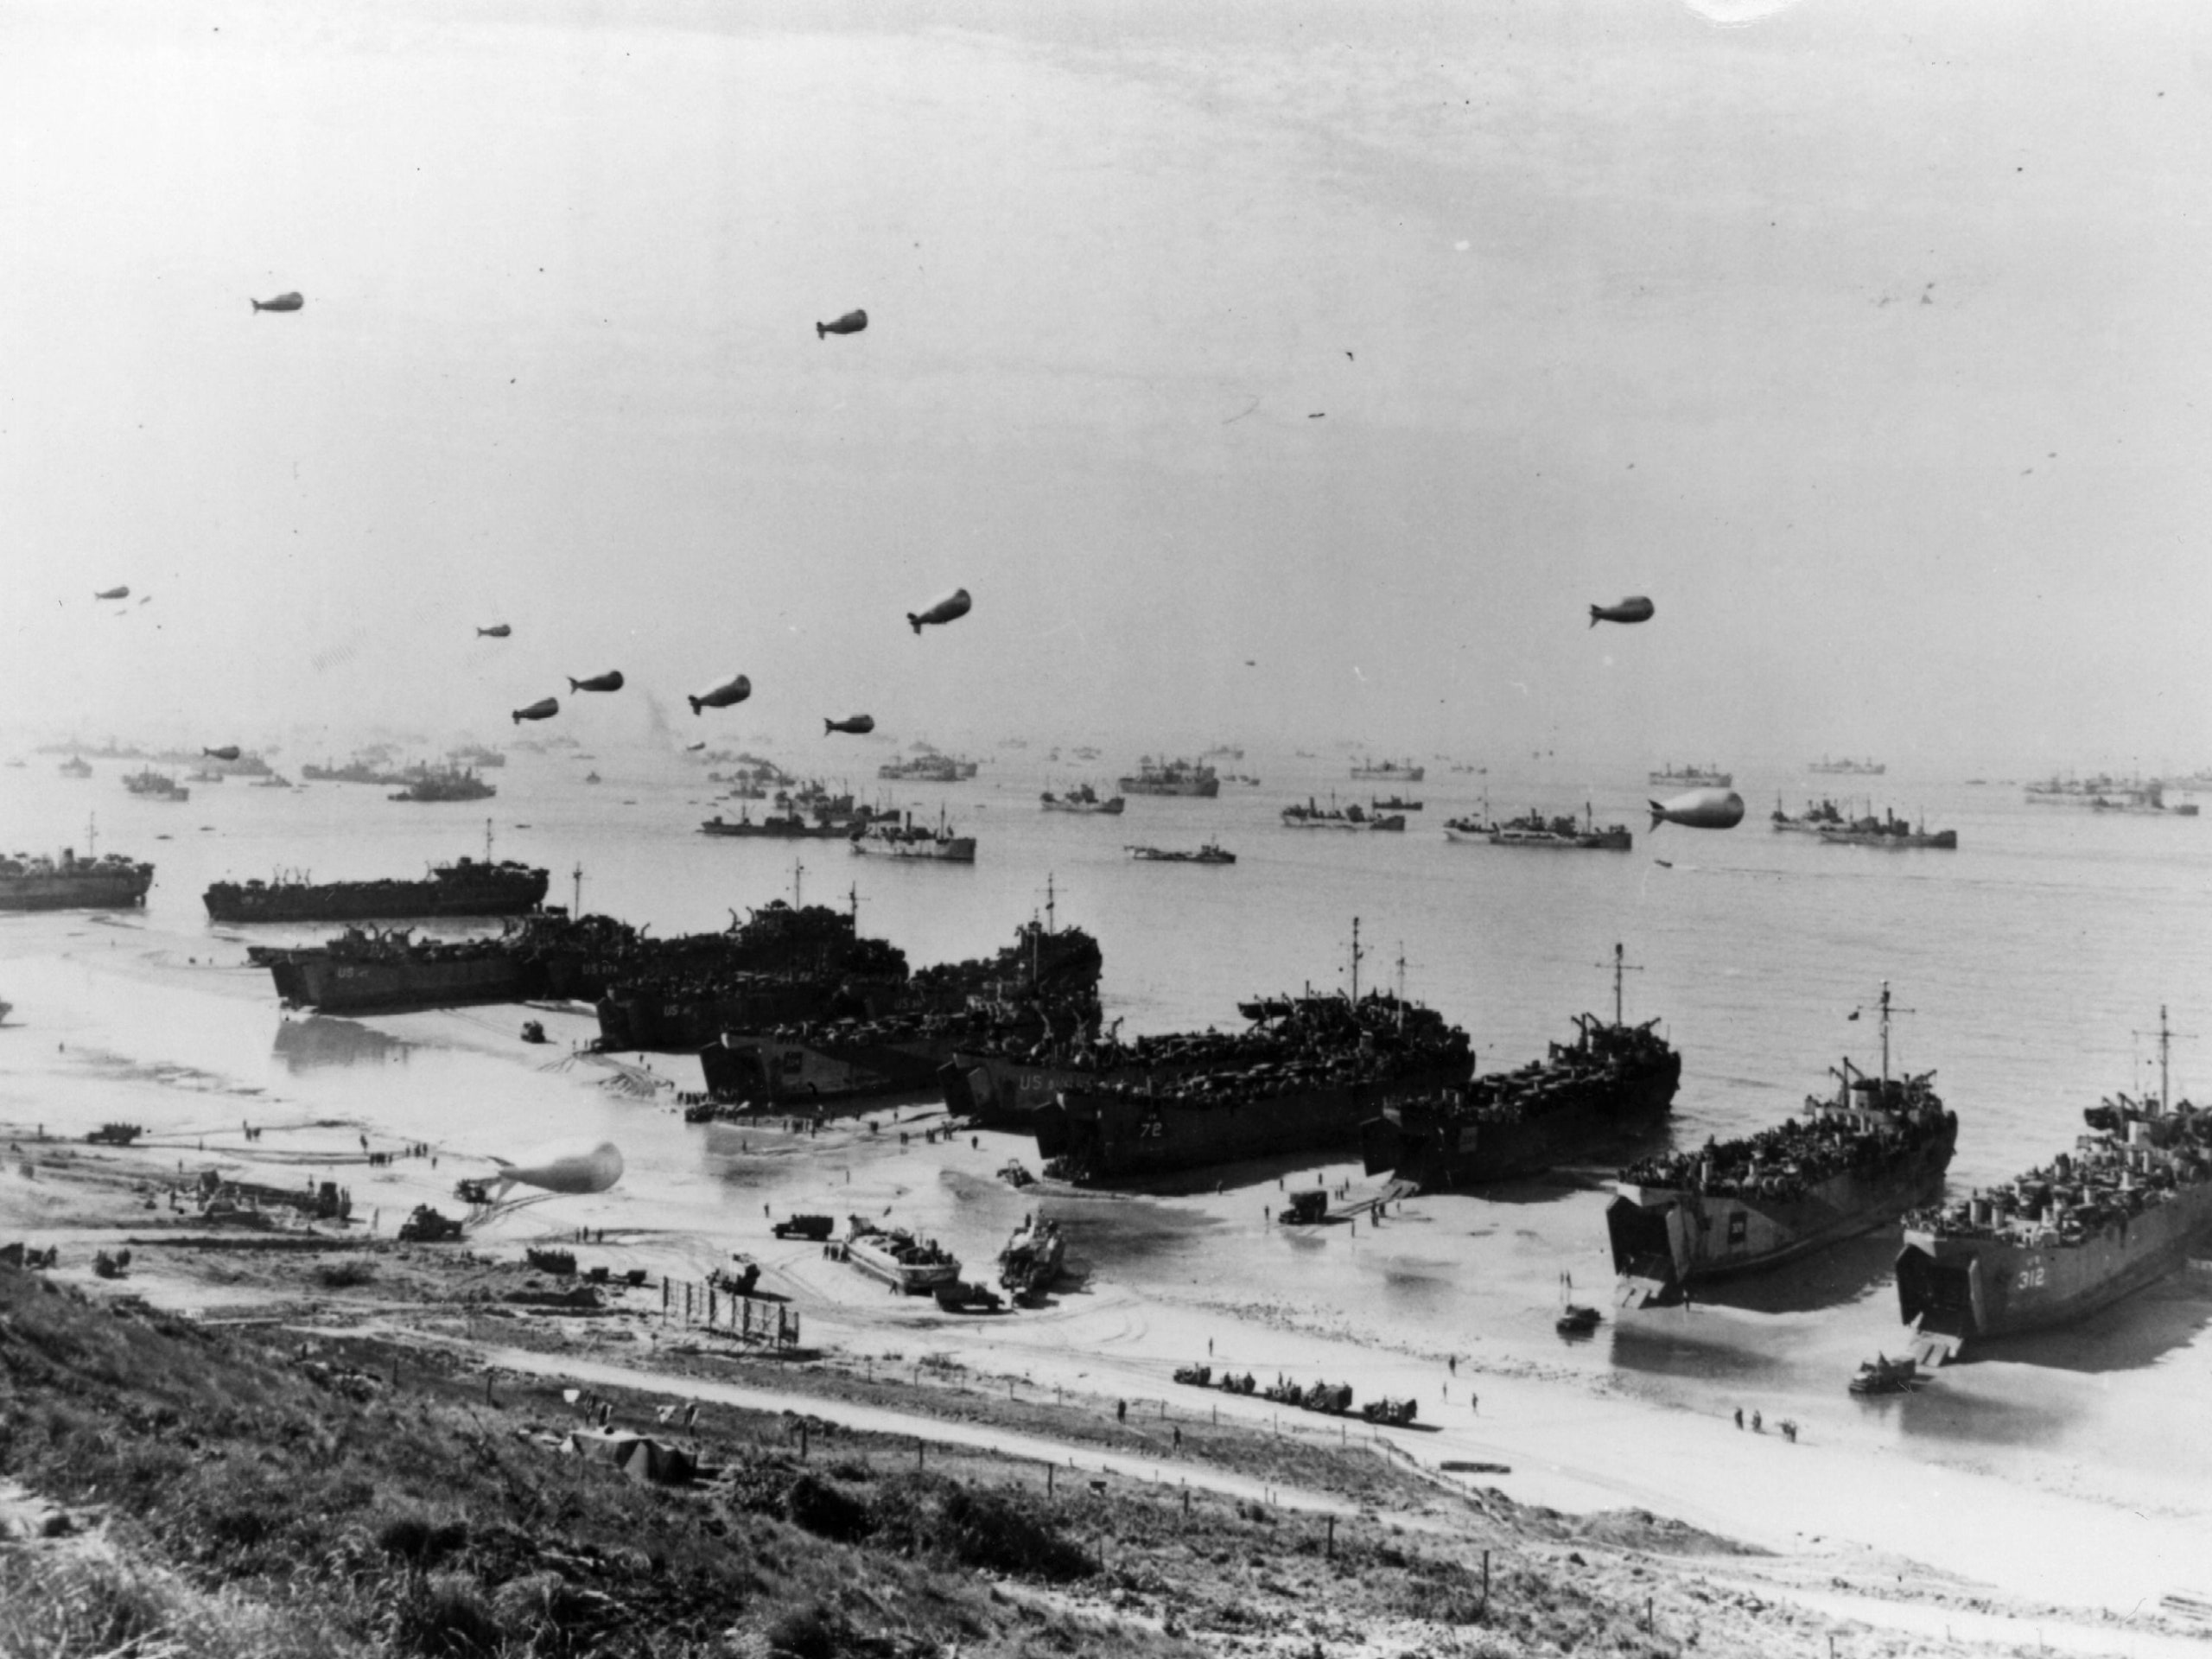 Ottant’anni fa lo sbarco in Normandia rovesciava le sorti della Seconda guerra mondiale